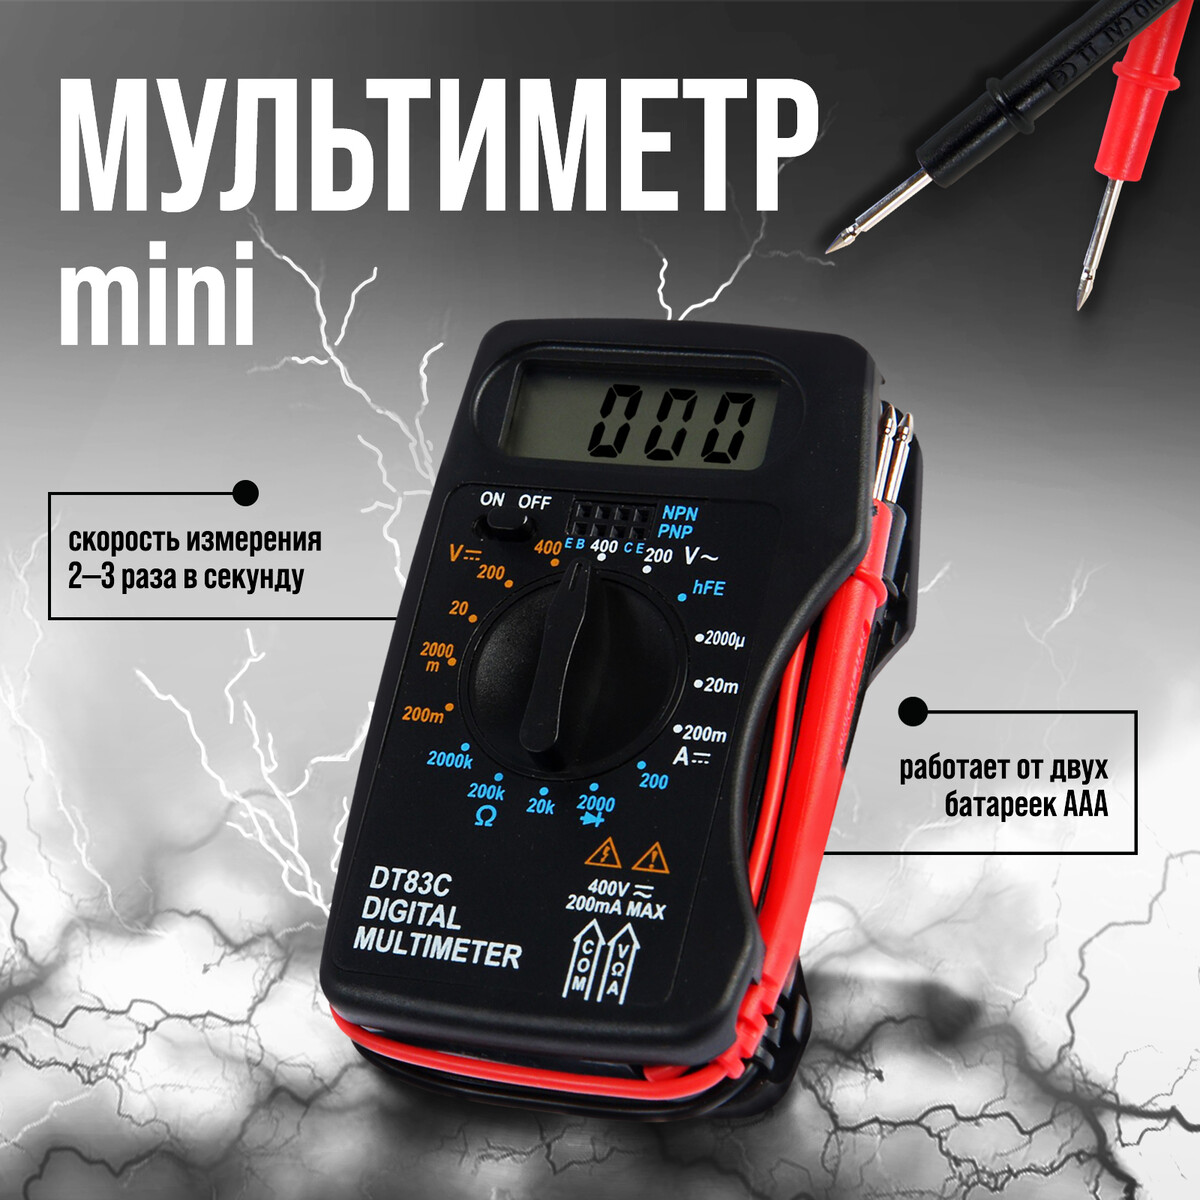 Мультиметр тундра mini, dt-83c, acv/dcv, dca, 200-2мω, проверка батареек 9v